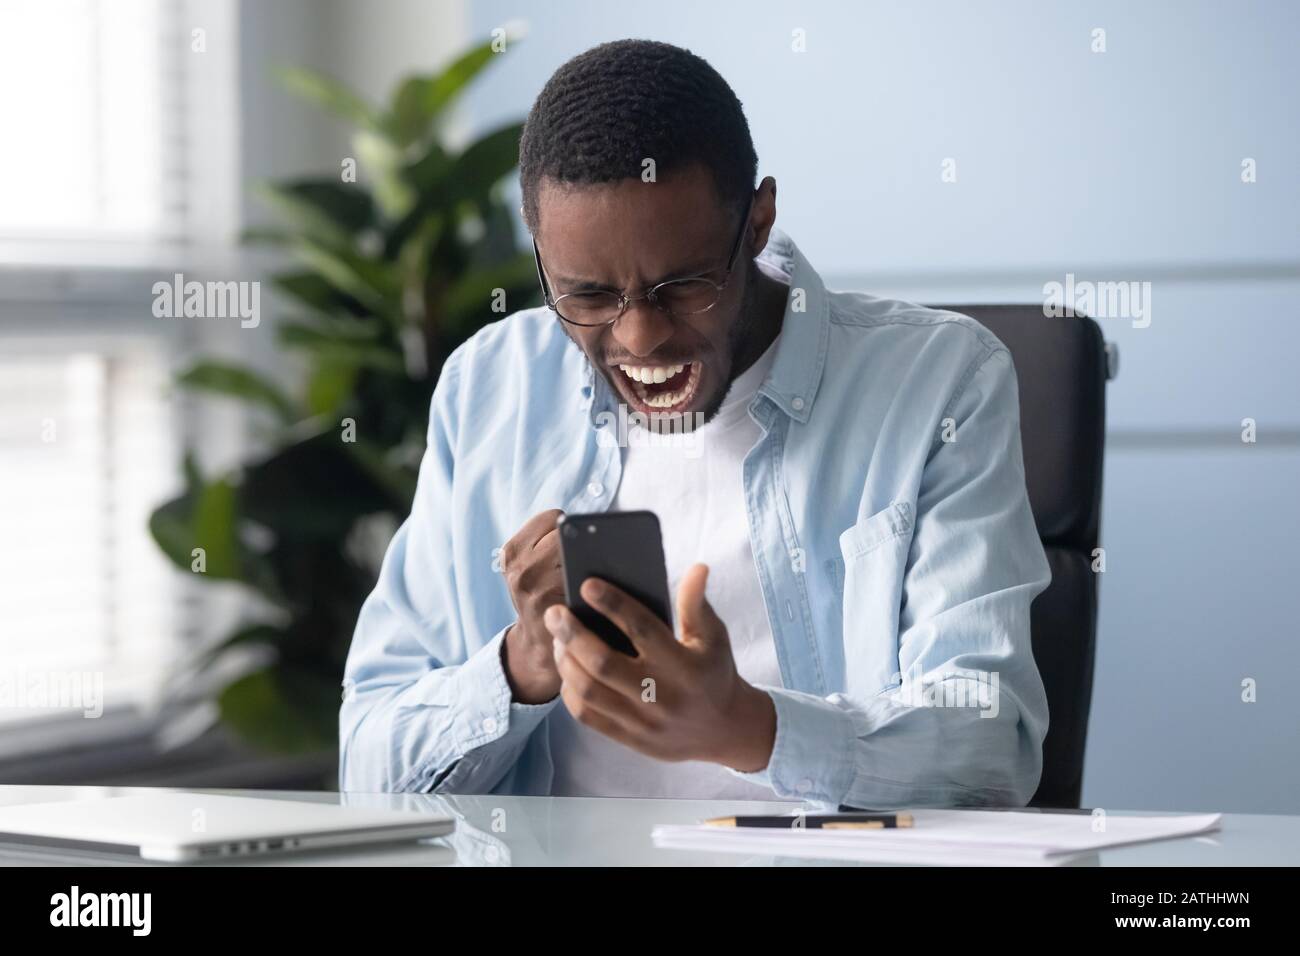 Un homme africain qui tient un téléphone portable se sent indigné d'avoir des problèmes de gadgets Banque D'Images